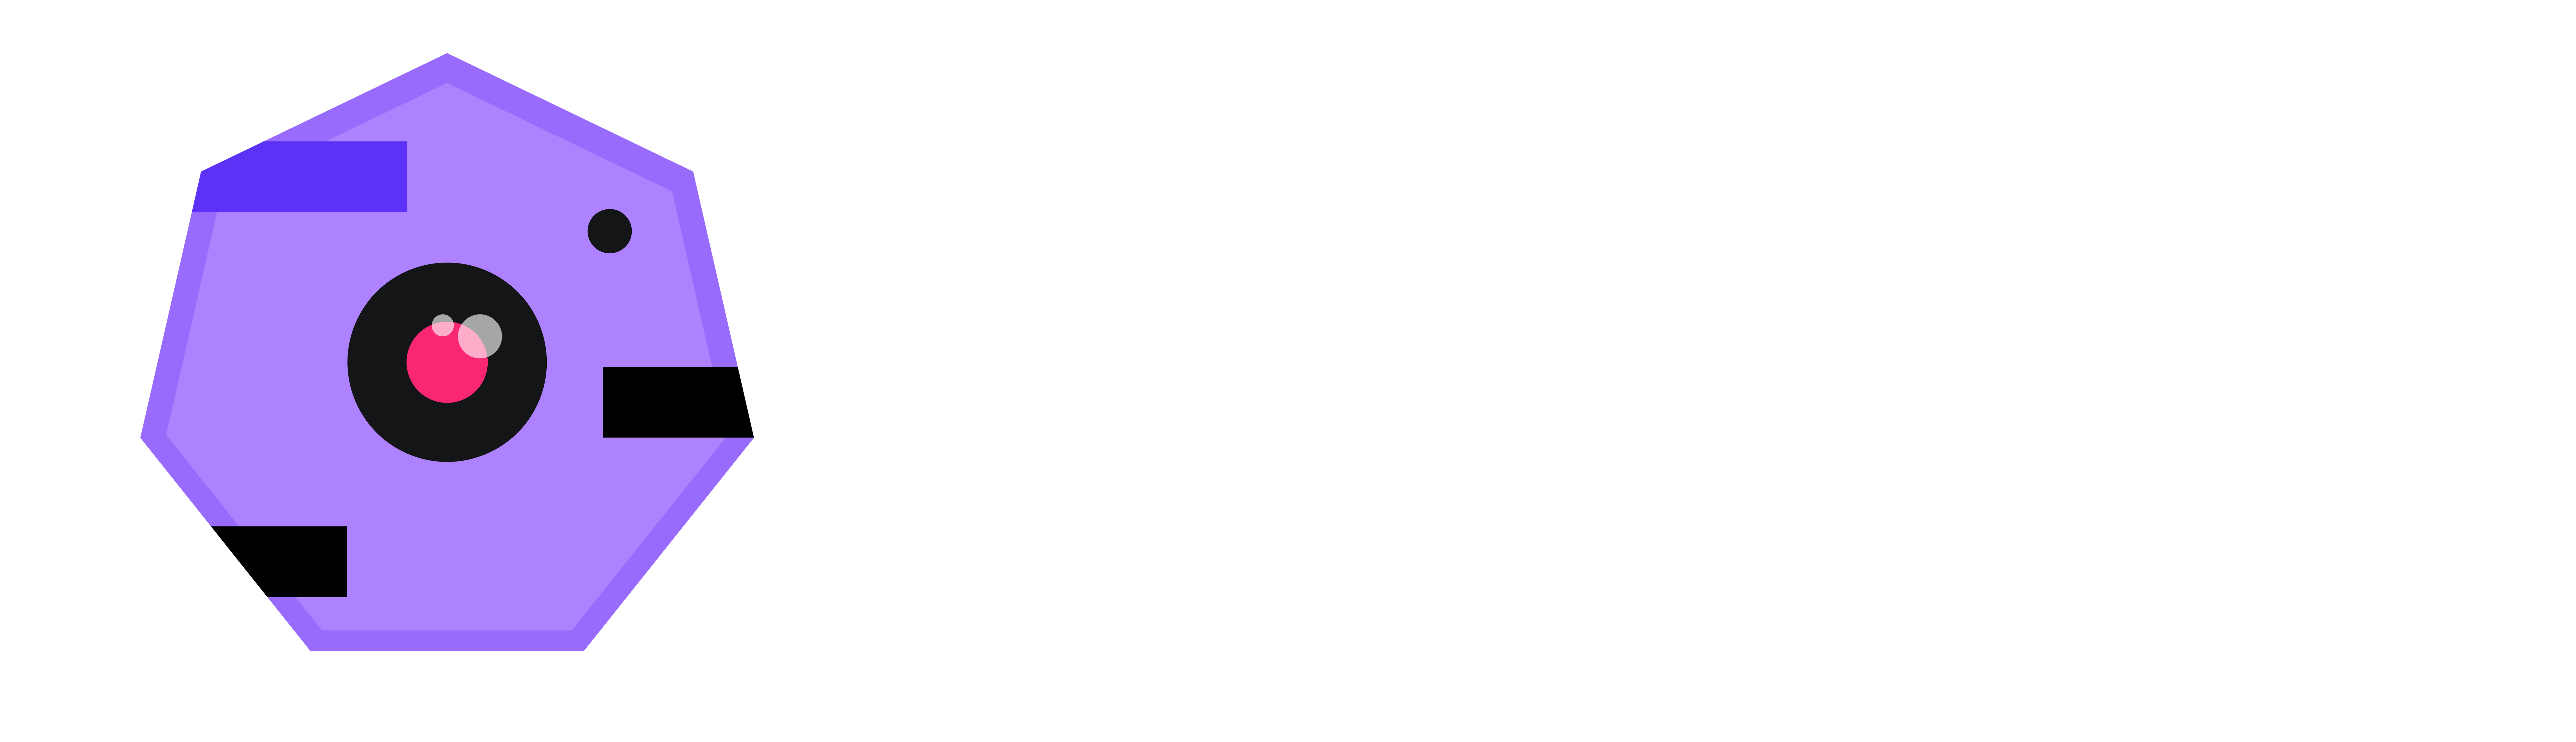 Pulsar light logo